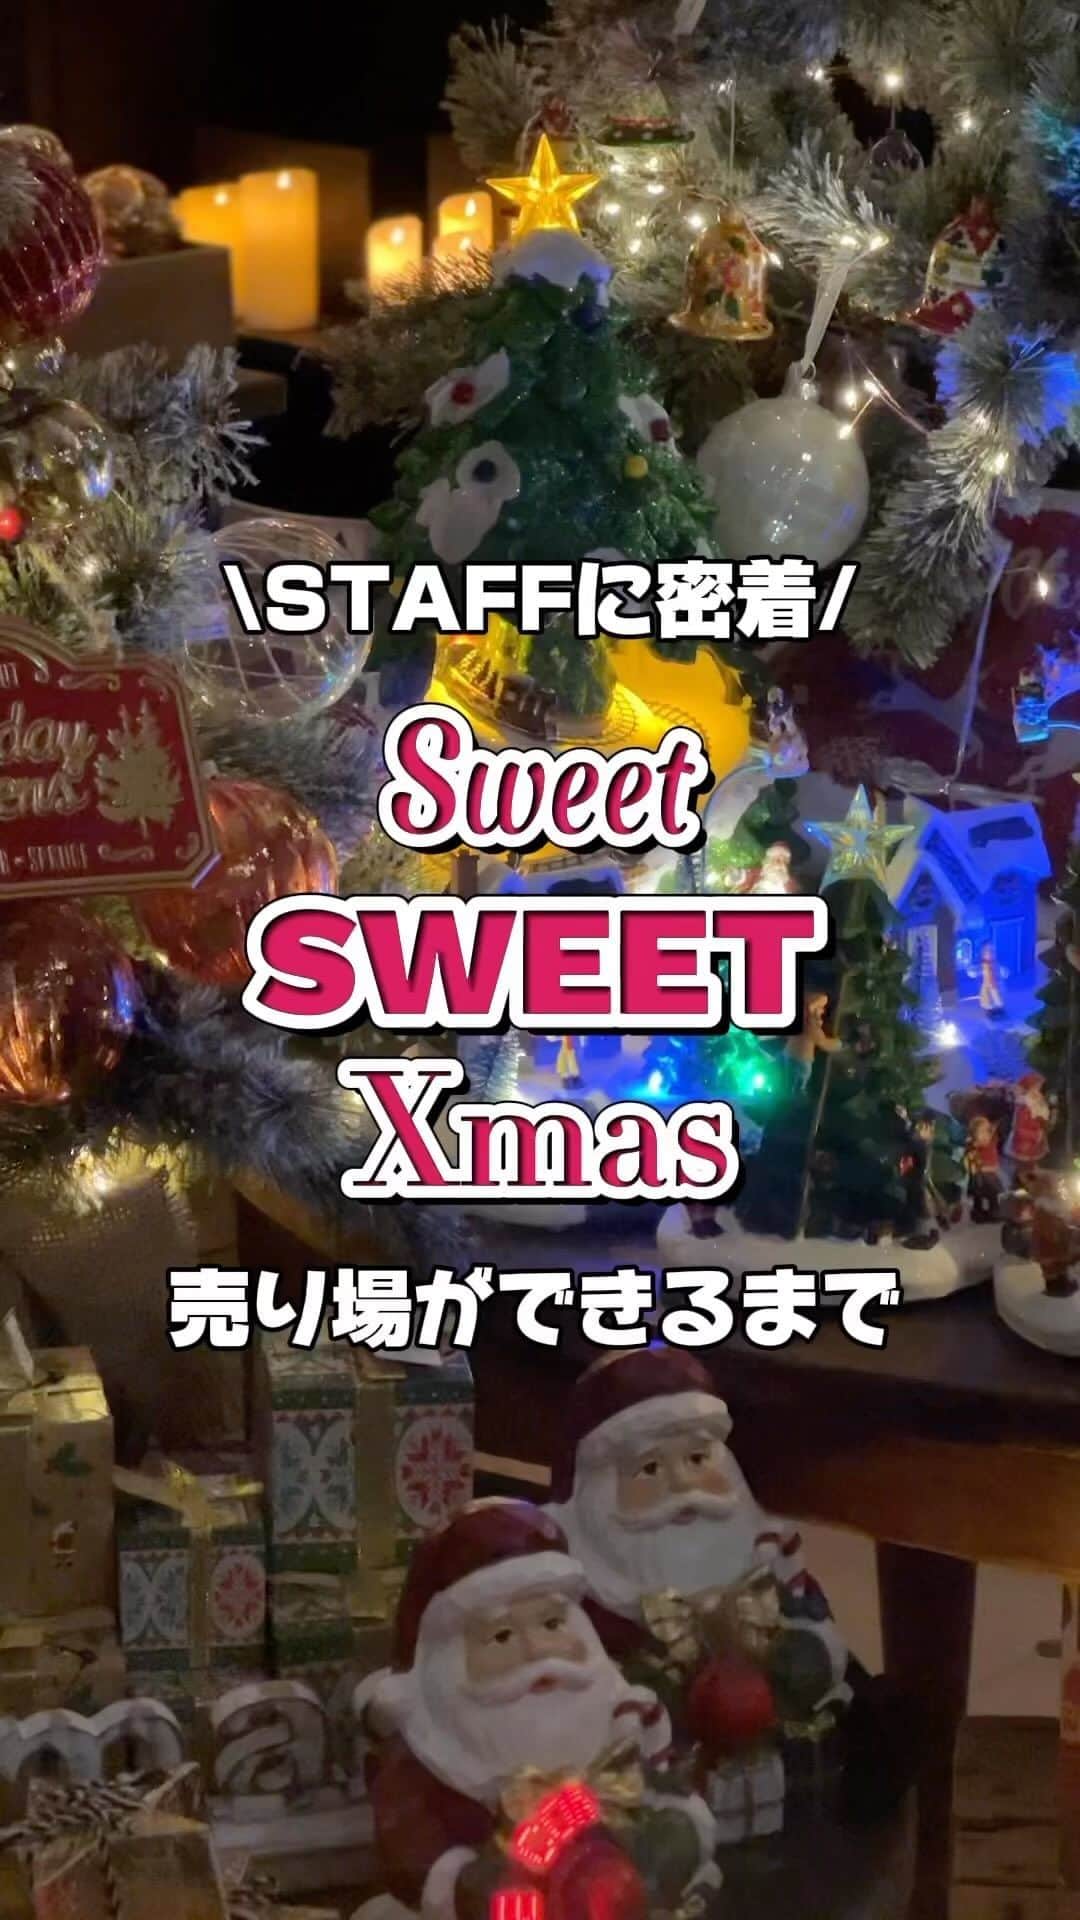 ニコアンドのインスタグラム：「. .  🎄Sweet SWEET Xmas🎄 ✨STORE LIMITED ✨ #店内クルーズ編 _______________________________  niko and ...では、 『Sweet SWEET Xmas』をテーマに、 お菓子とクリスマスの世界を味わえる⁉️ 大型店限定企画を10月27日よりスタート🎄🍪✨  本日9周年を迎える @nikoandtokyo 店の 売場が作られるまでの裏側をパパラッチ📸✨  10周目もどうぞ よろしくお願いします💕 _____________________  👉niko and ...スタッフが 一から手作りの什器は例の図工室にて製作中⁉️  👉店内のポストも作っちゃうよ📮✨投函するとサンタさんに届く鈴がなります🔔🎄  👉依頼があれば駆けつけます⁉️なうわさは如何に🕵️✨ 詳しくは @nikoandtokyo まで☎️✨  _______________________________  🎄展開店舗🎄 niko and ... TOKYO niko and ... mozoワンダーシティ niko and ... ららぽーとTOKYO-BAY niko and ...横浜ベイクォーター niko and ...神戸ハーバーランドウミエ niko and ...イオンモール旭川西 niko and ...イオンモール白山 niko and ... イオンモール豊川 niko and ...ららぽーと福岡  _______________________________  #nikoand #ニコアンド #であうにあう #styleeditorialbrand #uni9uesense #sweetsweetxmas #ニコアンドのちょっと早すぎるクリスマス #thelittlebakerytokyo  #ザリトルベーカリートーキョー #クリスマス #ニコアンドのうわさシリーズ #ニコアンドの裏側シリーズ #diy」